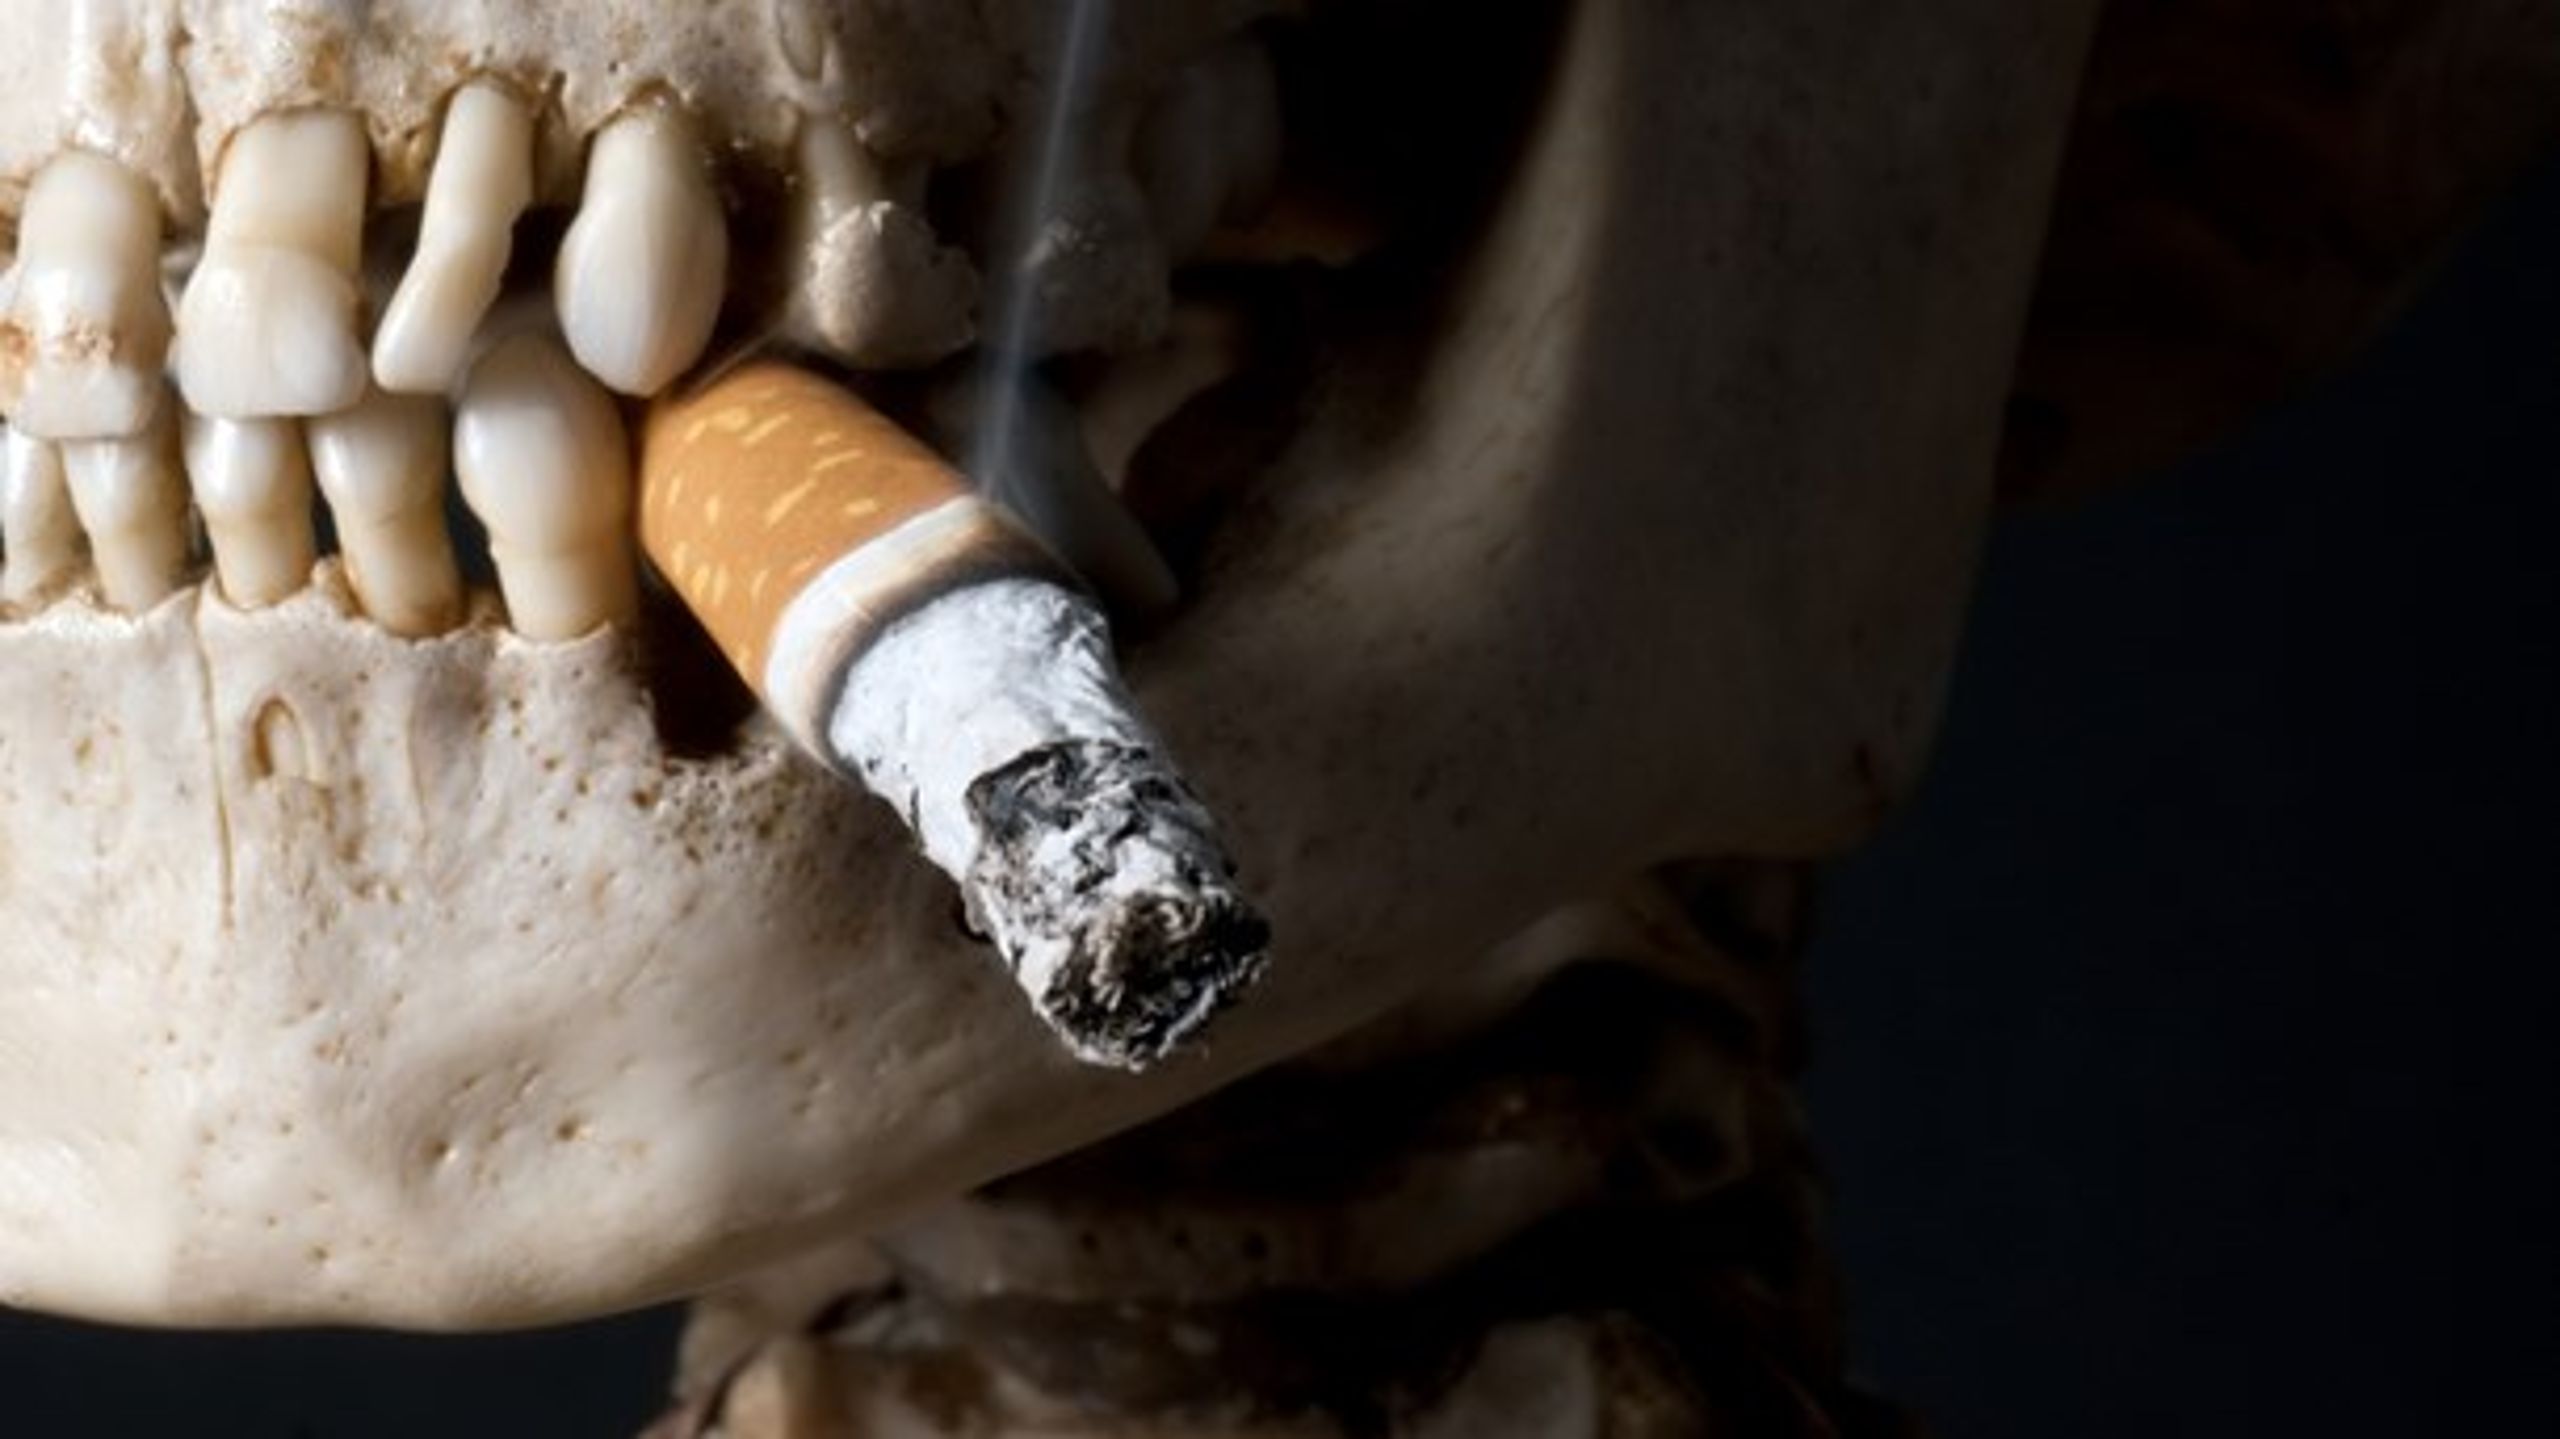 <b>RETTEN TIL DUMHED:</b> Myndige borgere må kunne forventes at kunne forudse, at rygning potentielt kan påvirke deres helbred, skriver Majbritt M. Nielsen.